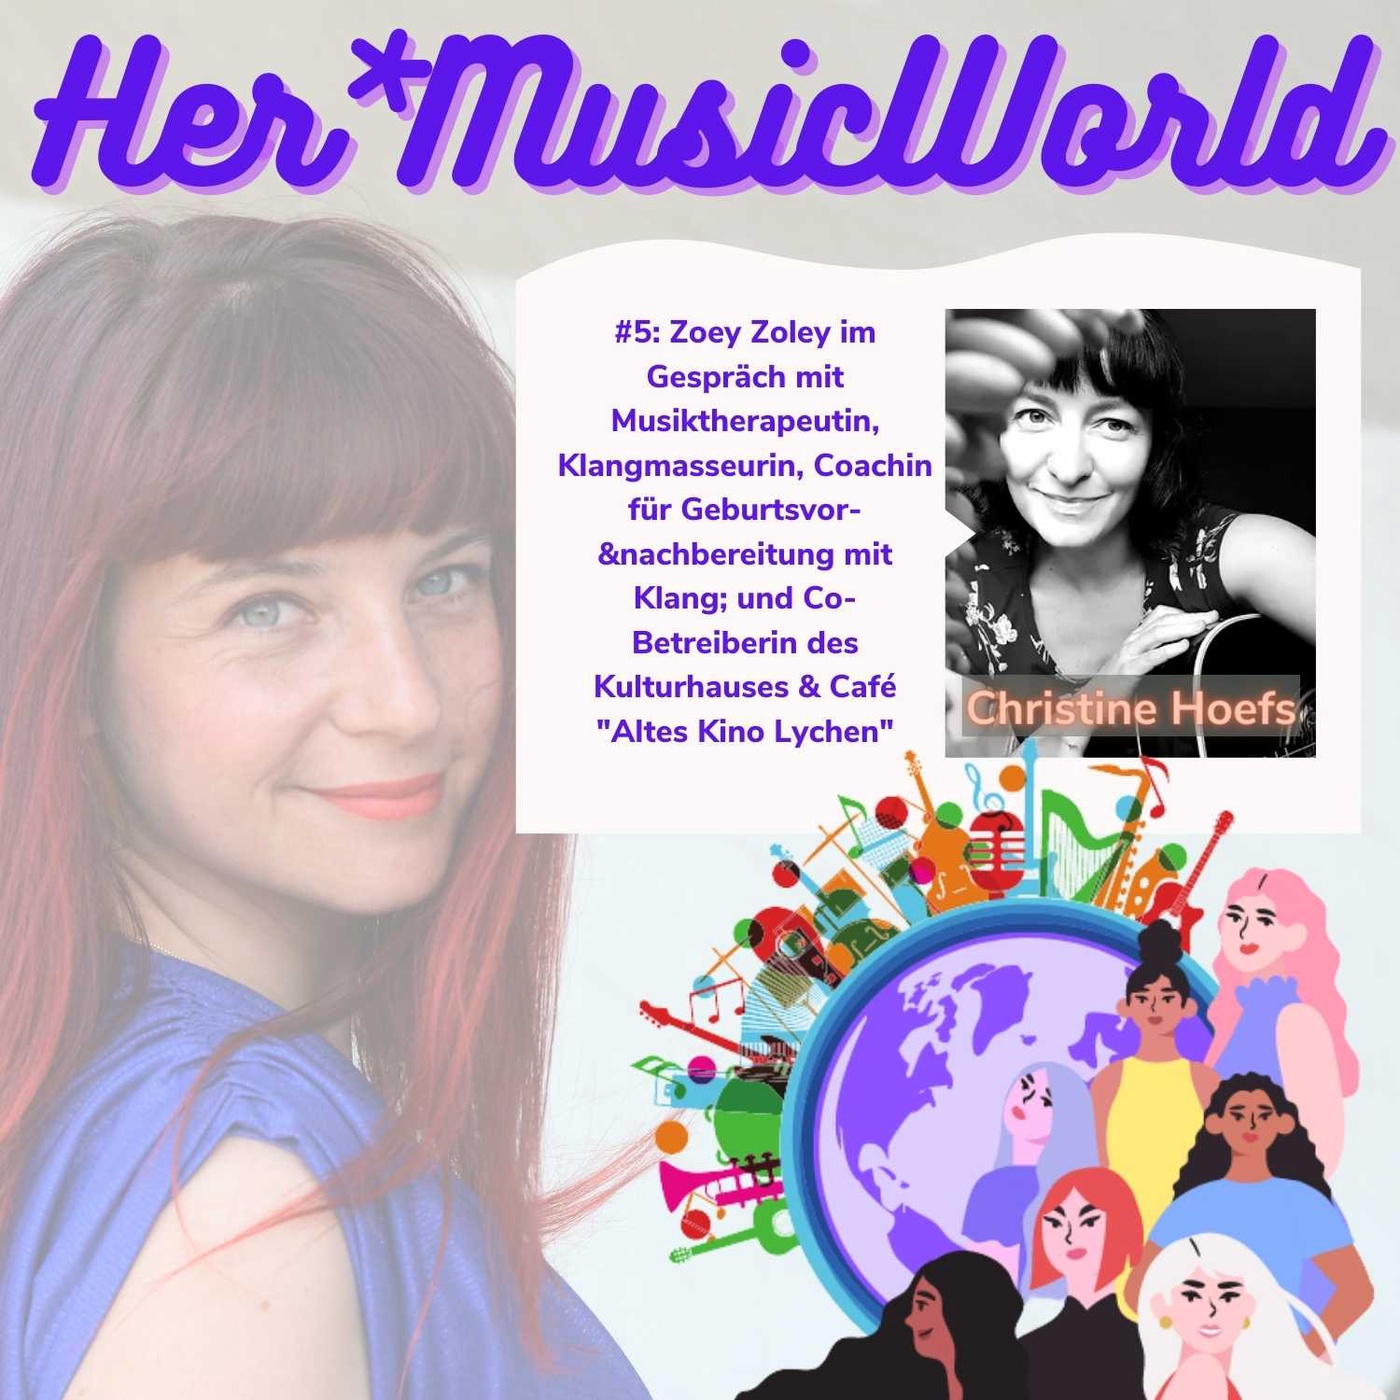 #5 HerMusicWorld Podcast mit Gästin Tine Hoefs